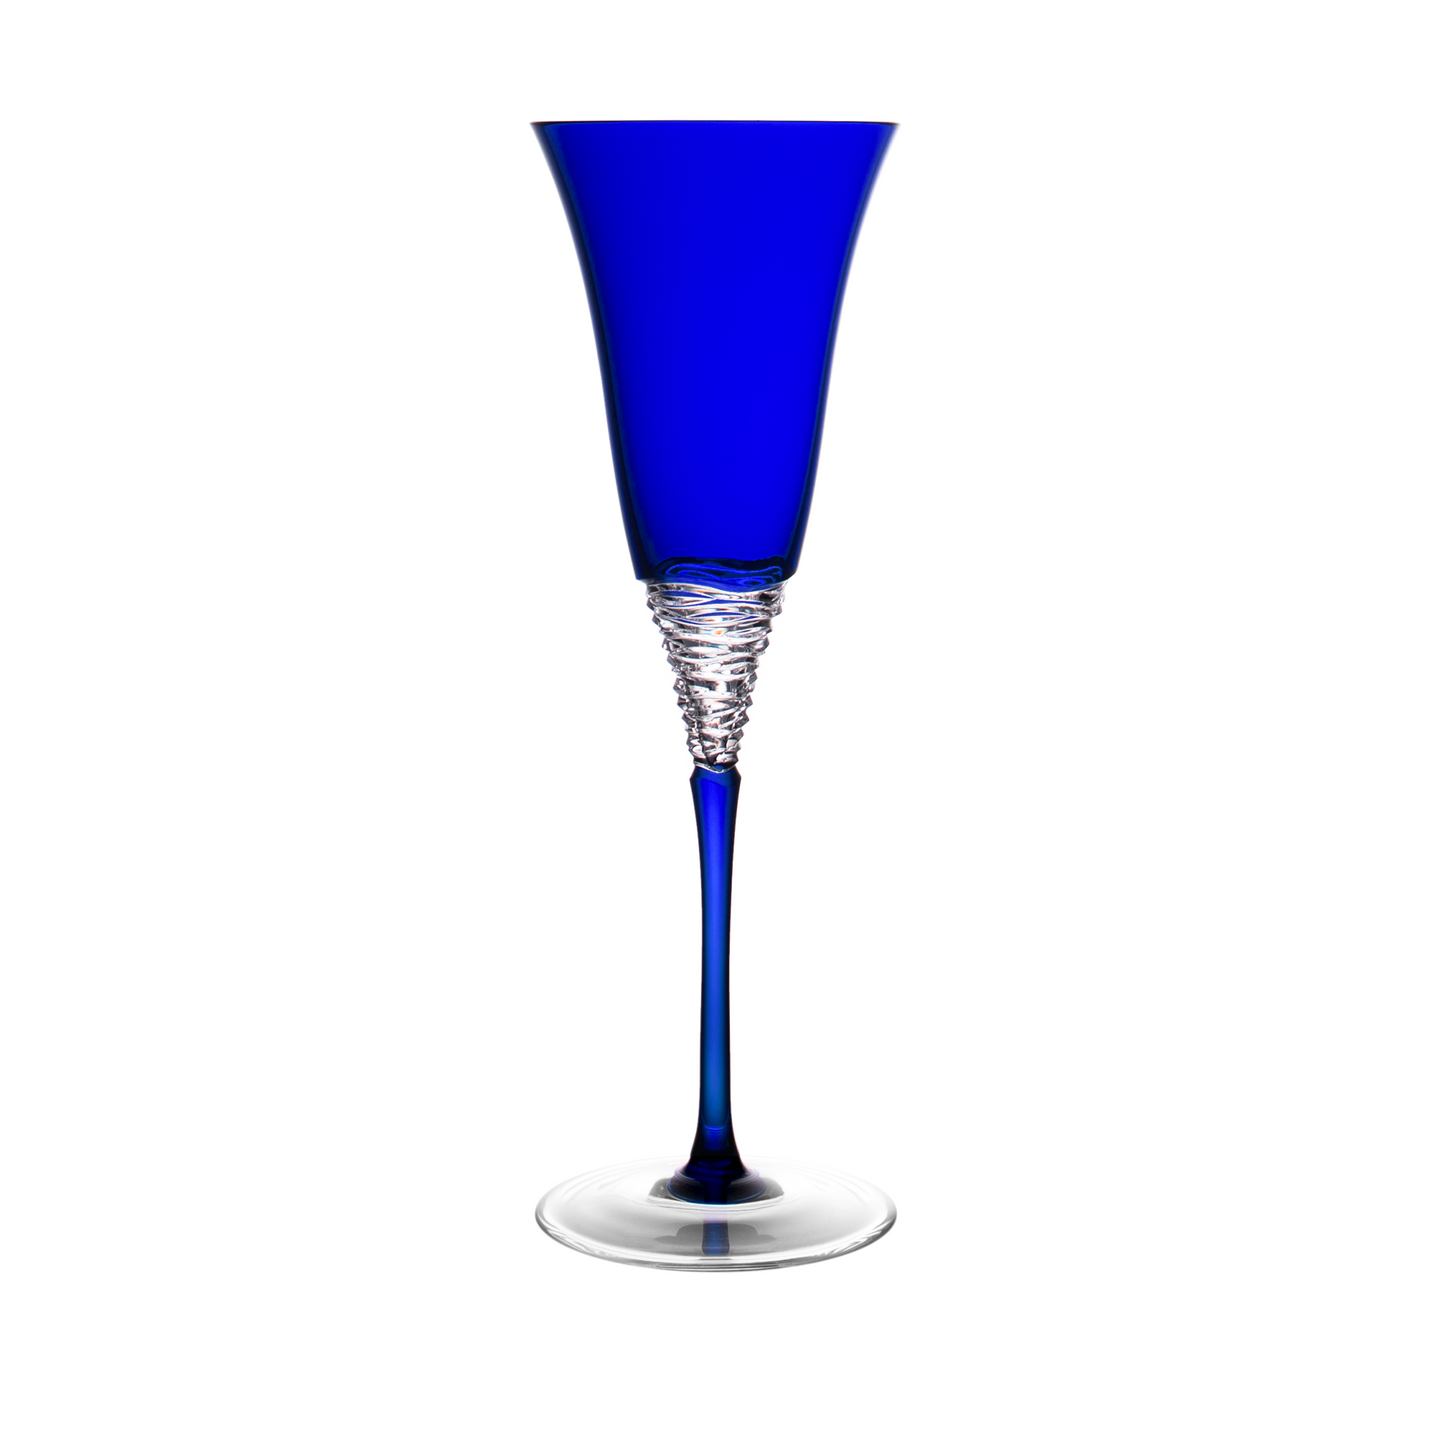 Benoite Blue Champagne Flute